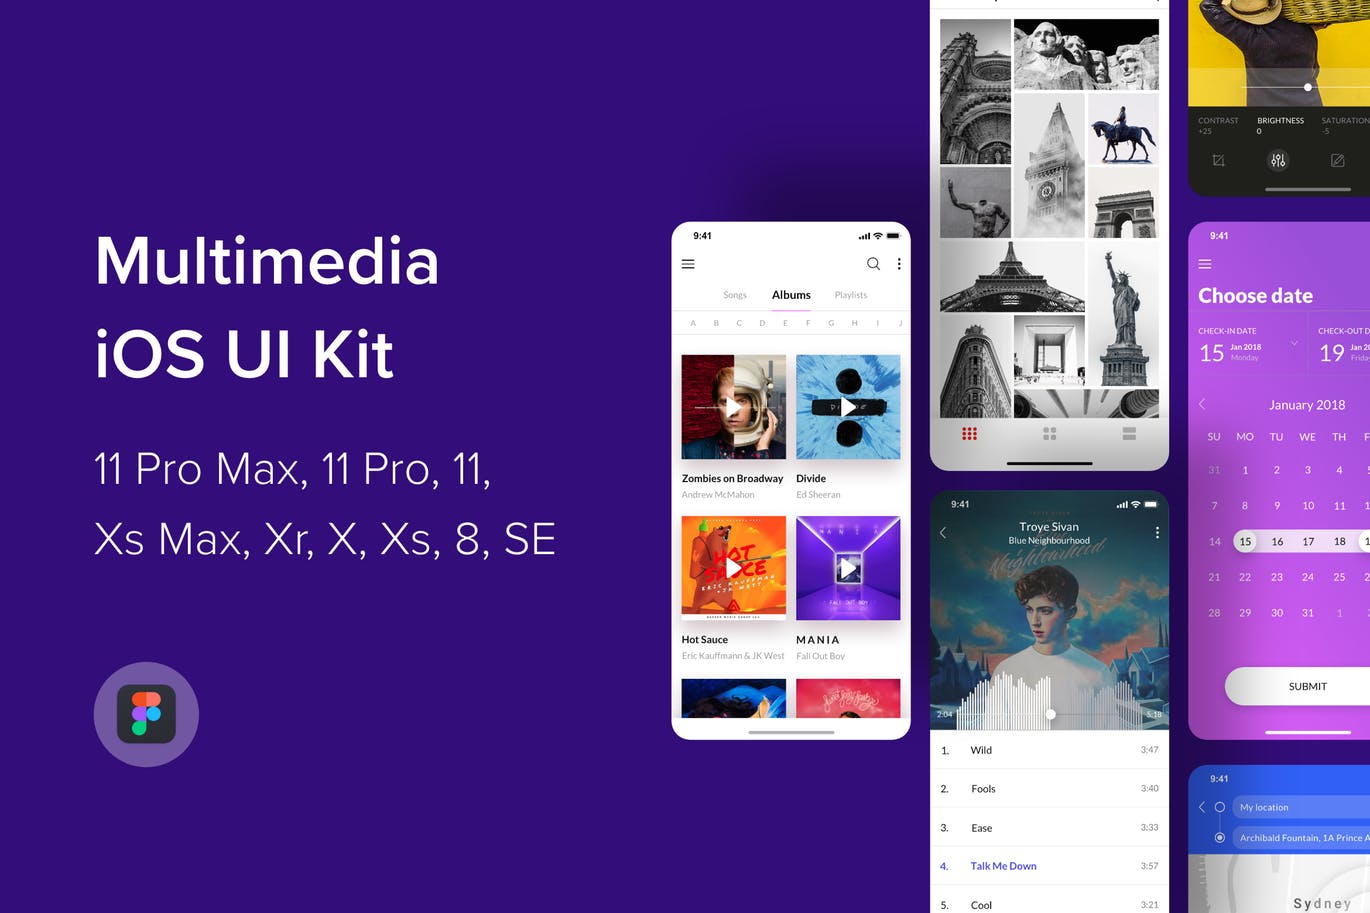 iOS平台多媒体娱乐APP应用UI设计Figma模板 Multimedia iOS UI Kit (Figma)插图